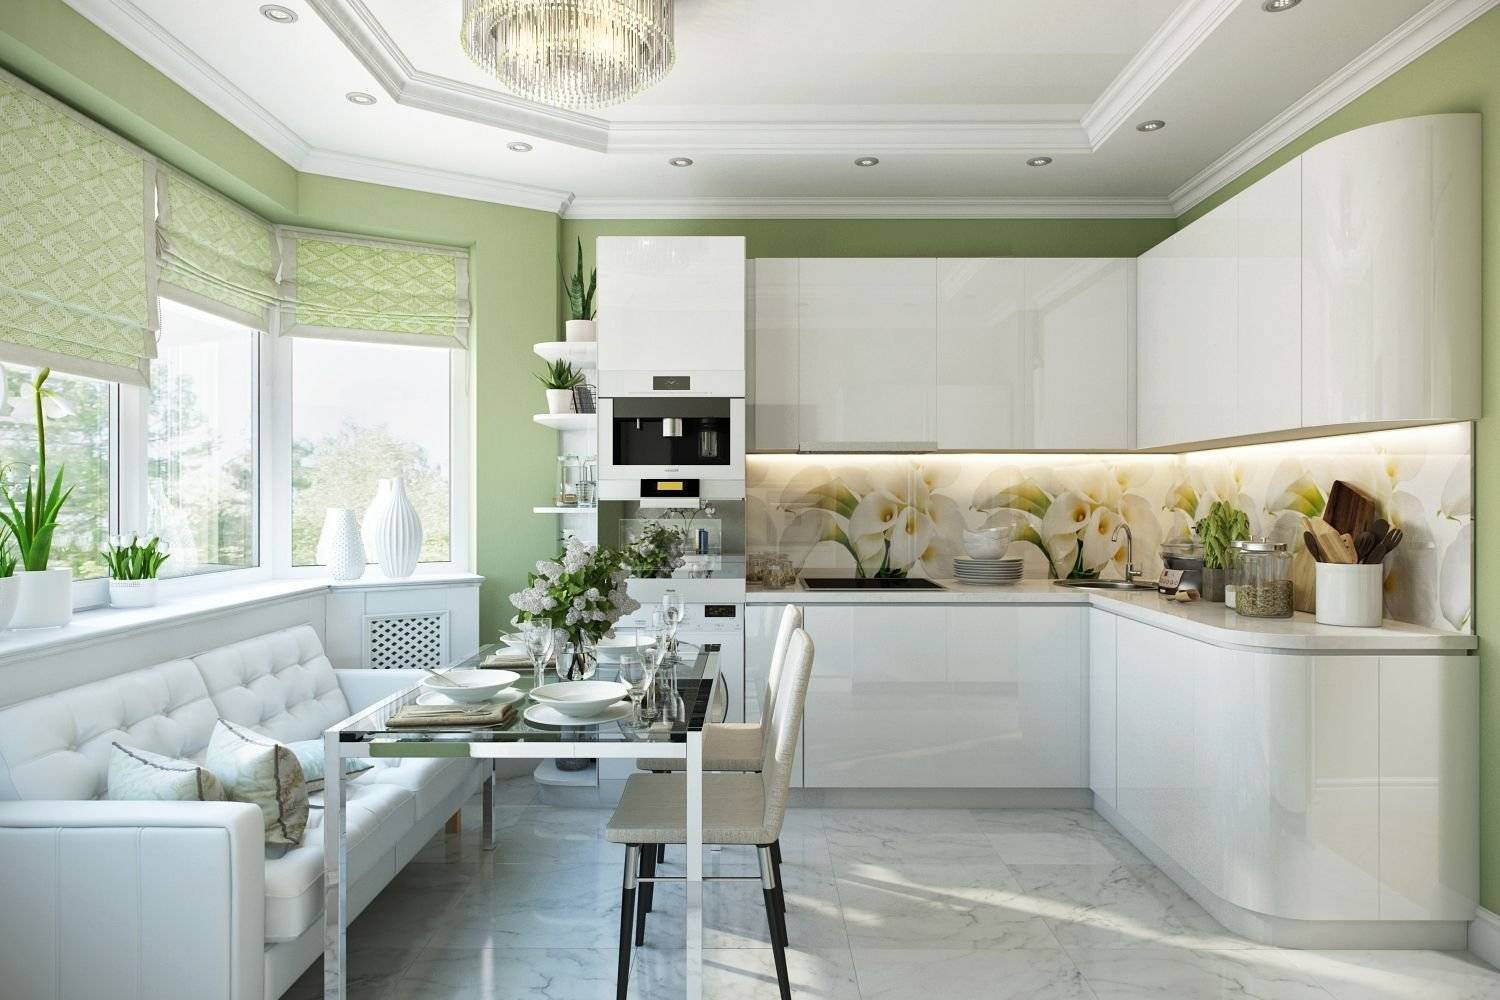 Дизайн кухни в частном доме: стили, цвета, мебель, освещение, яркие оттенки, идеи дизайна, модные тенденции